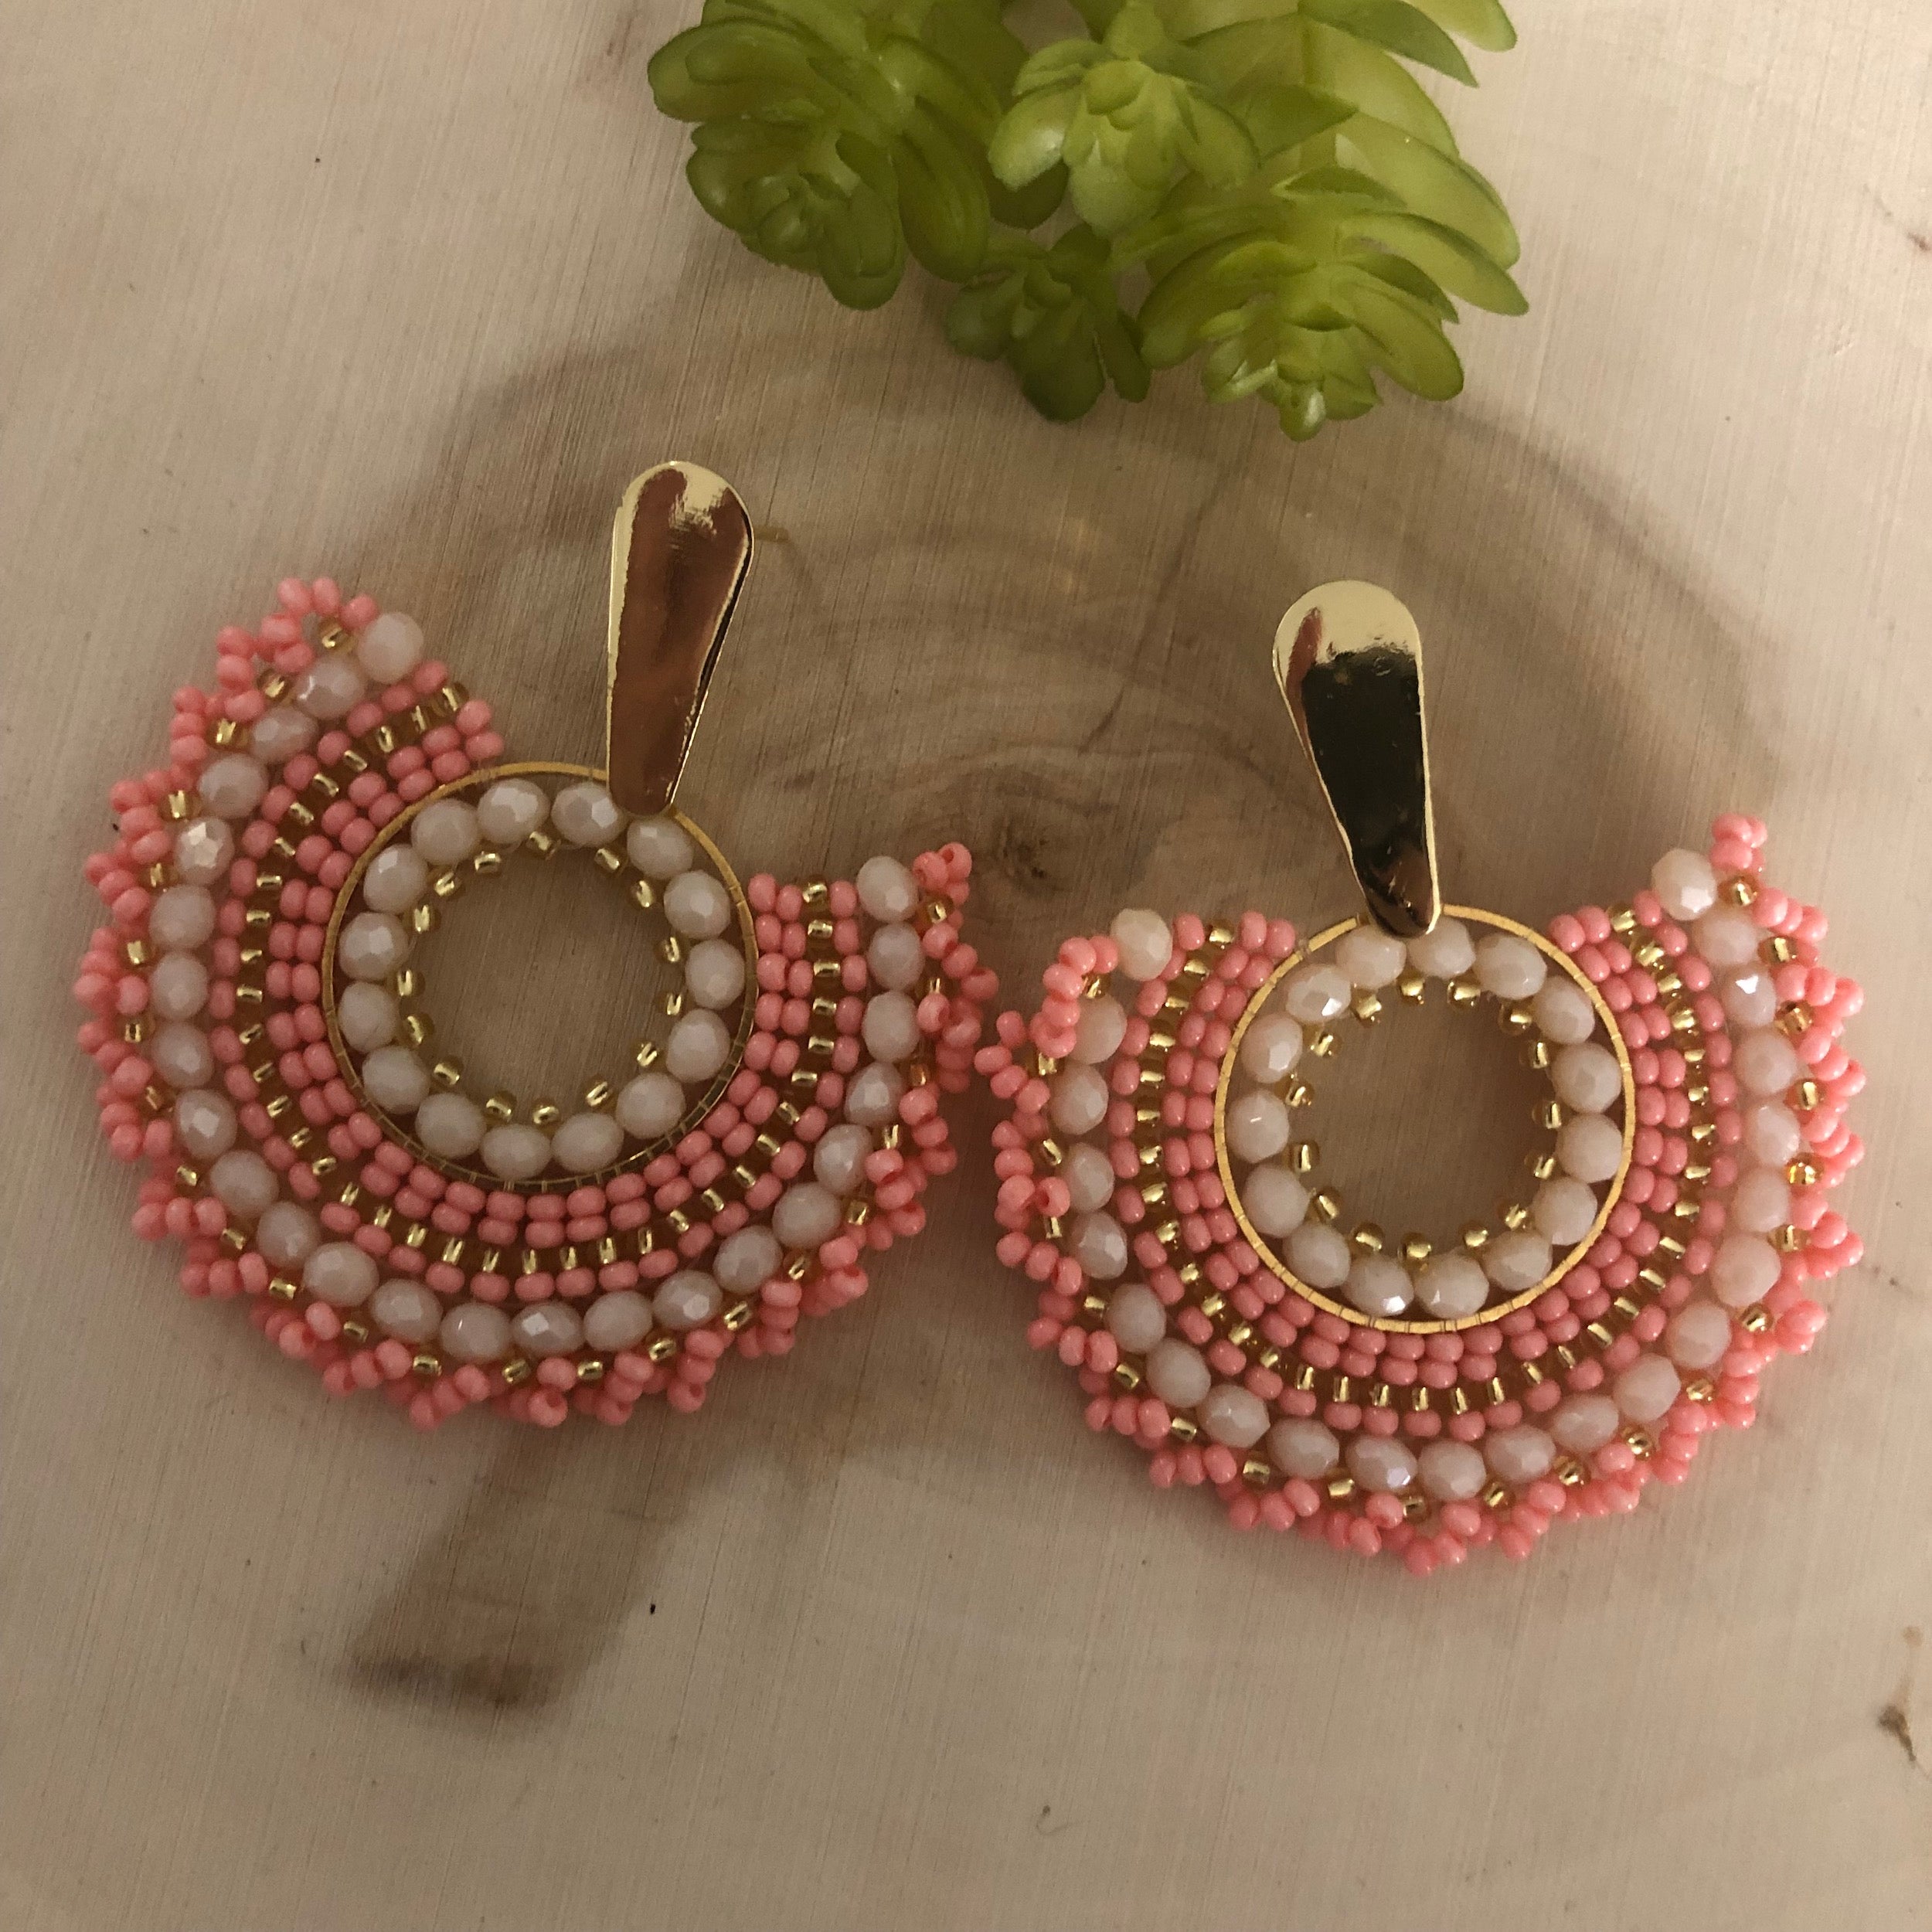 Designer Golden Handmade Earrings at 5490.00 INR in Ludhiana | Bant Ram  Jewellers